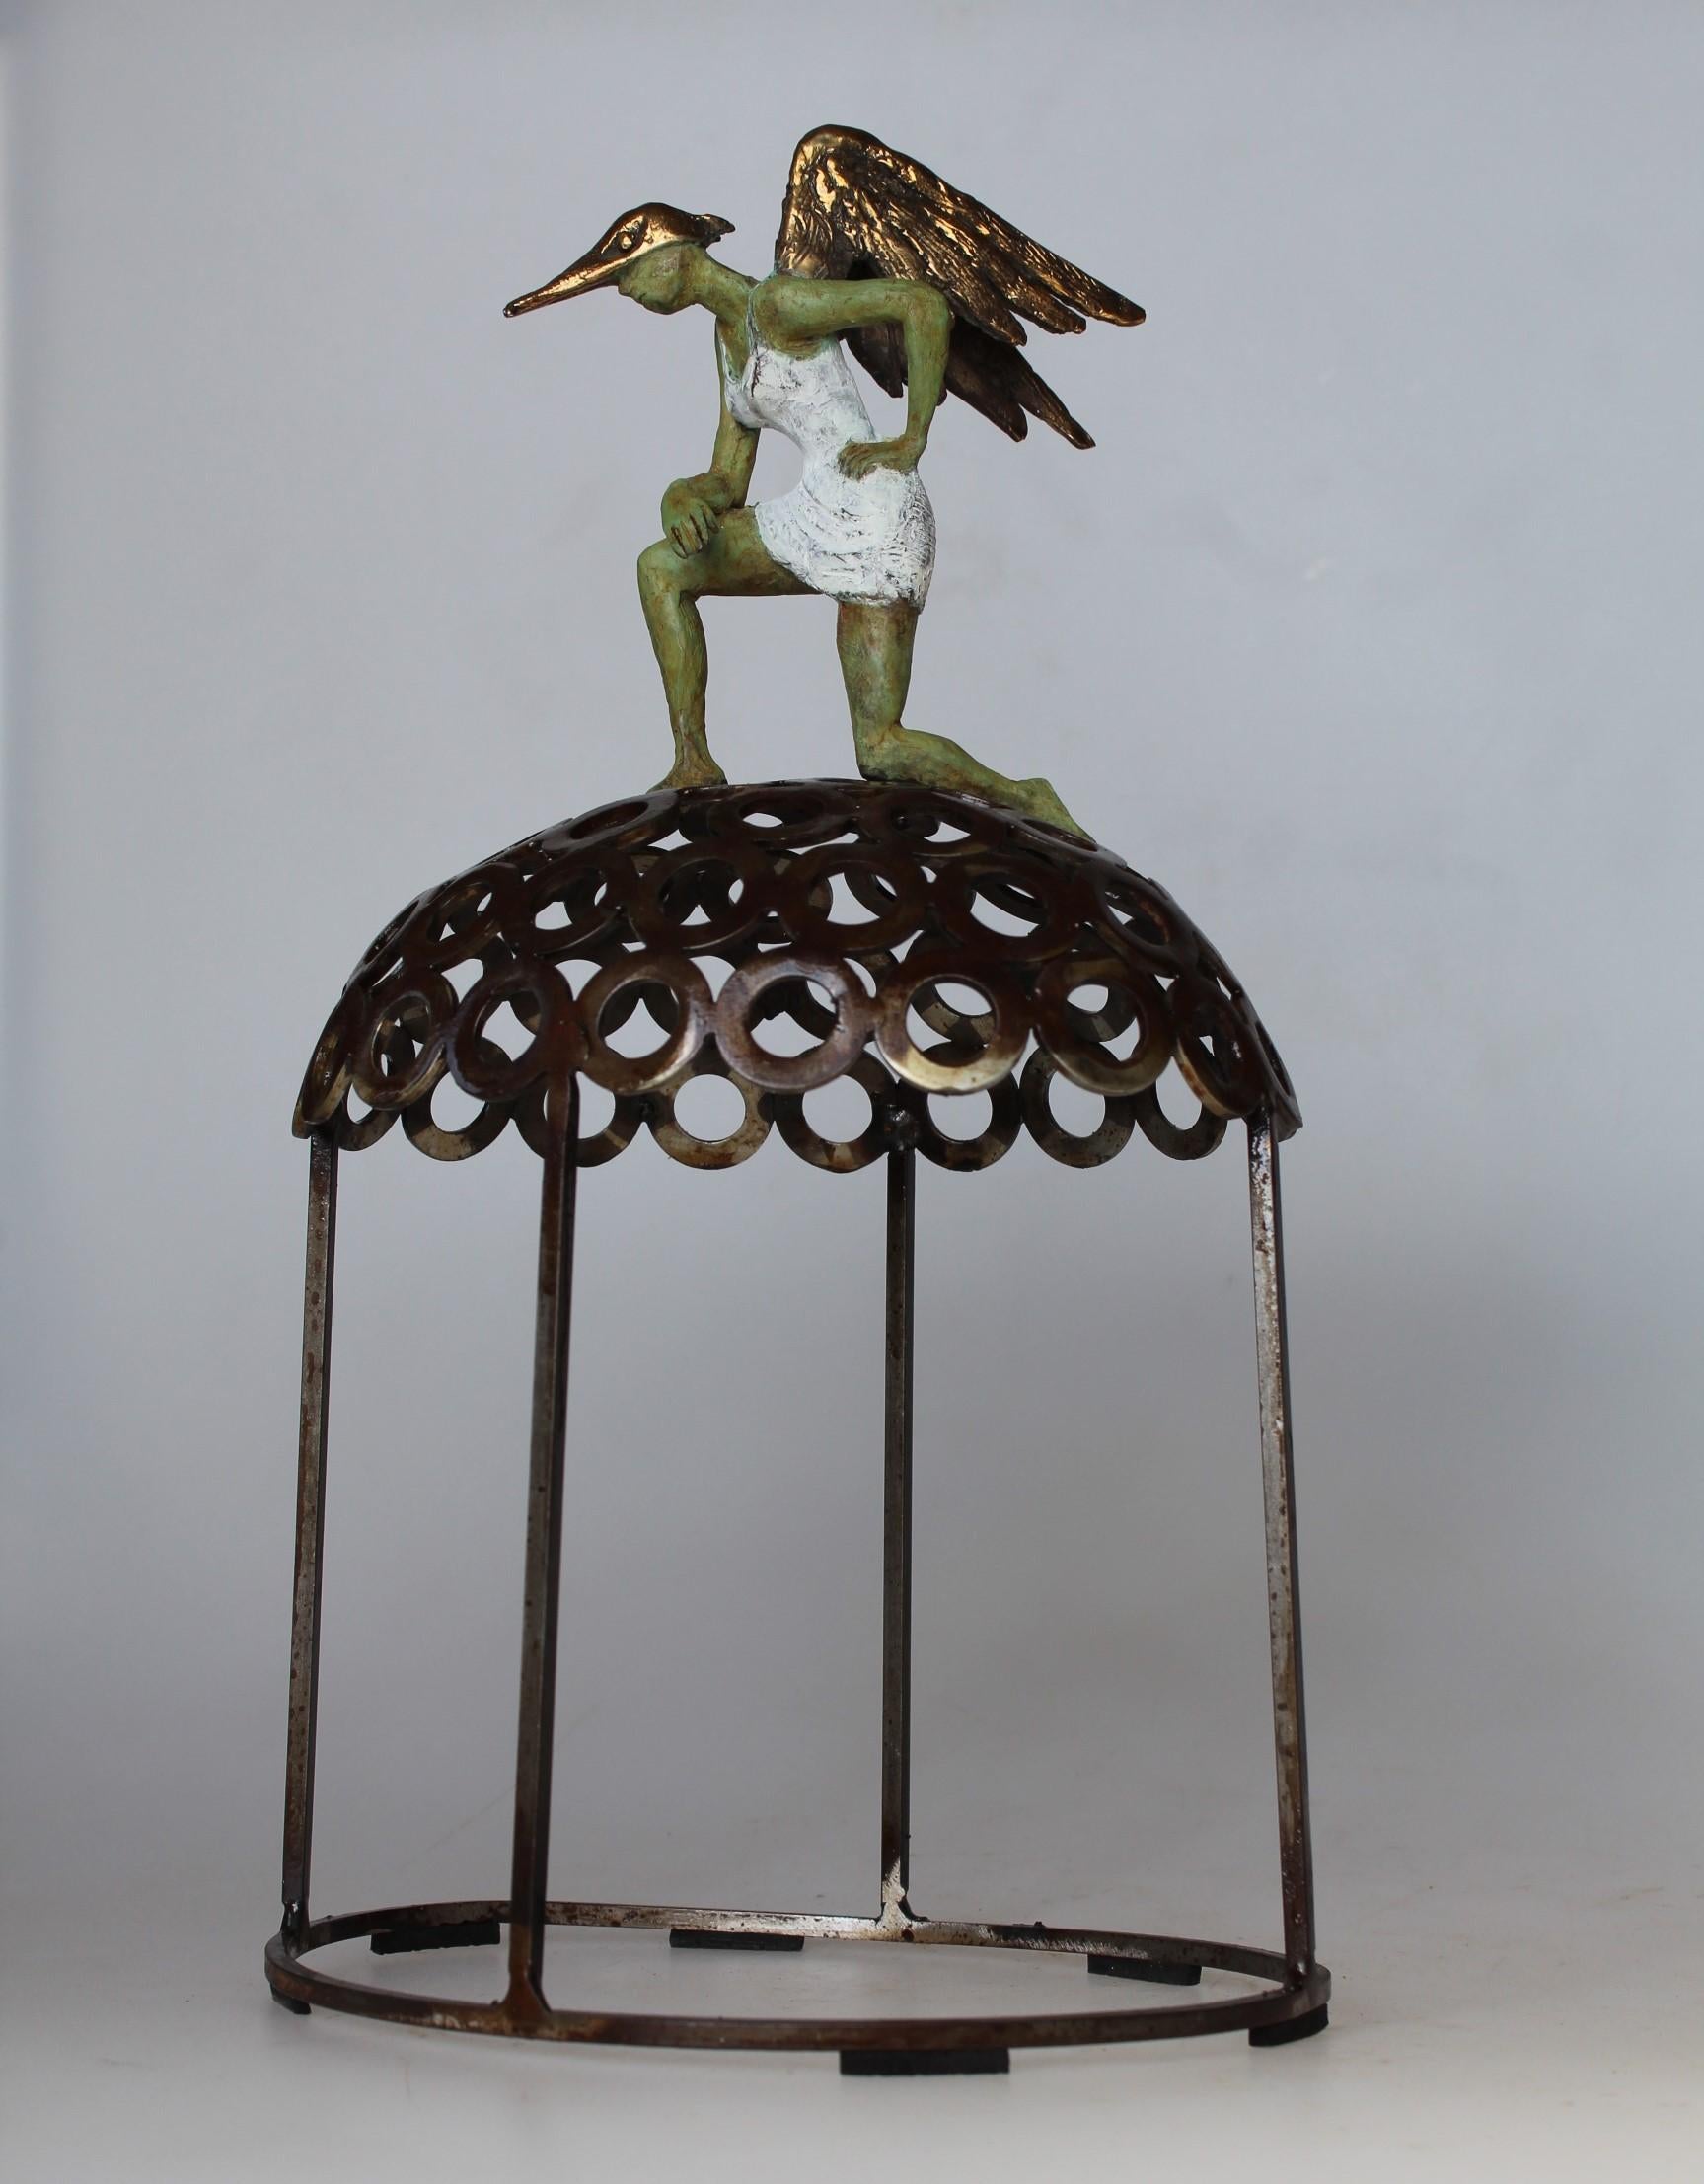 Joan Artigas Planas Figurative Sculpture - "Super Lady" contemporary bronze table sculpture figurative liberty strength fly